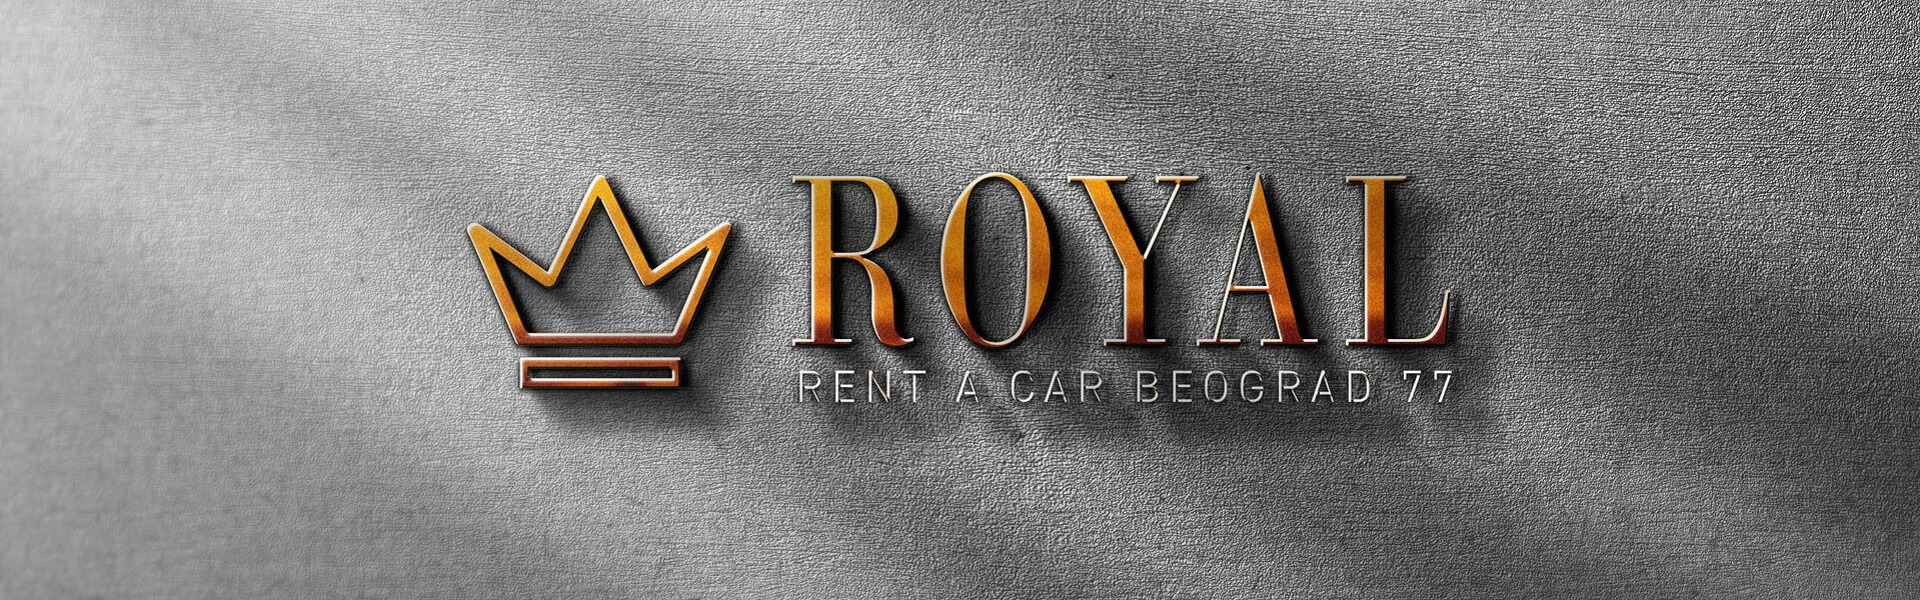 Rent a car Montenegro | Car rental Beograd Royal